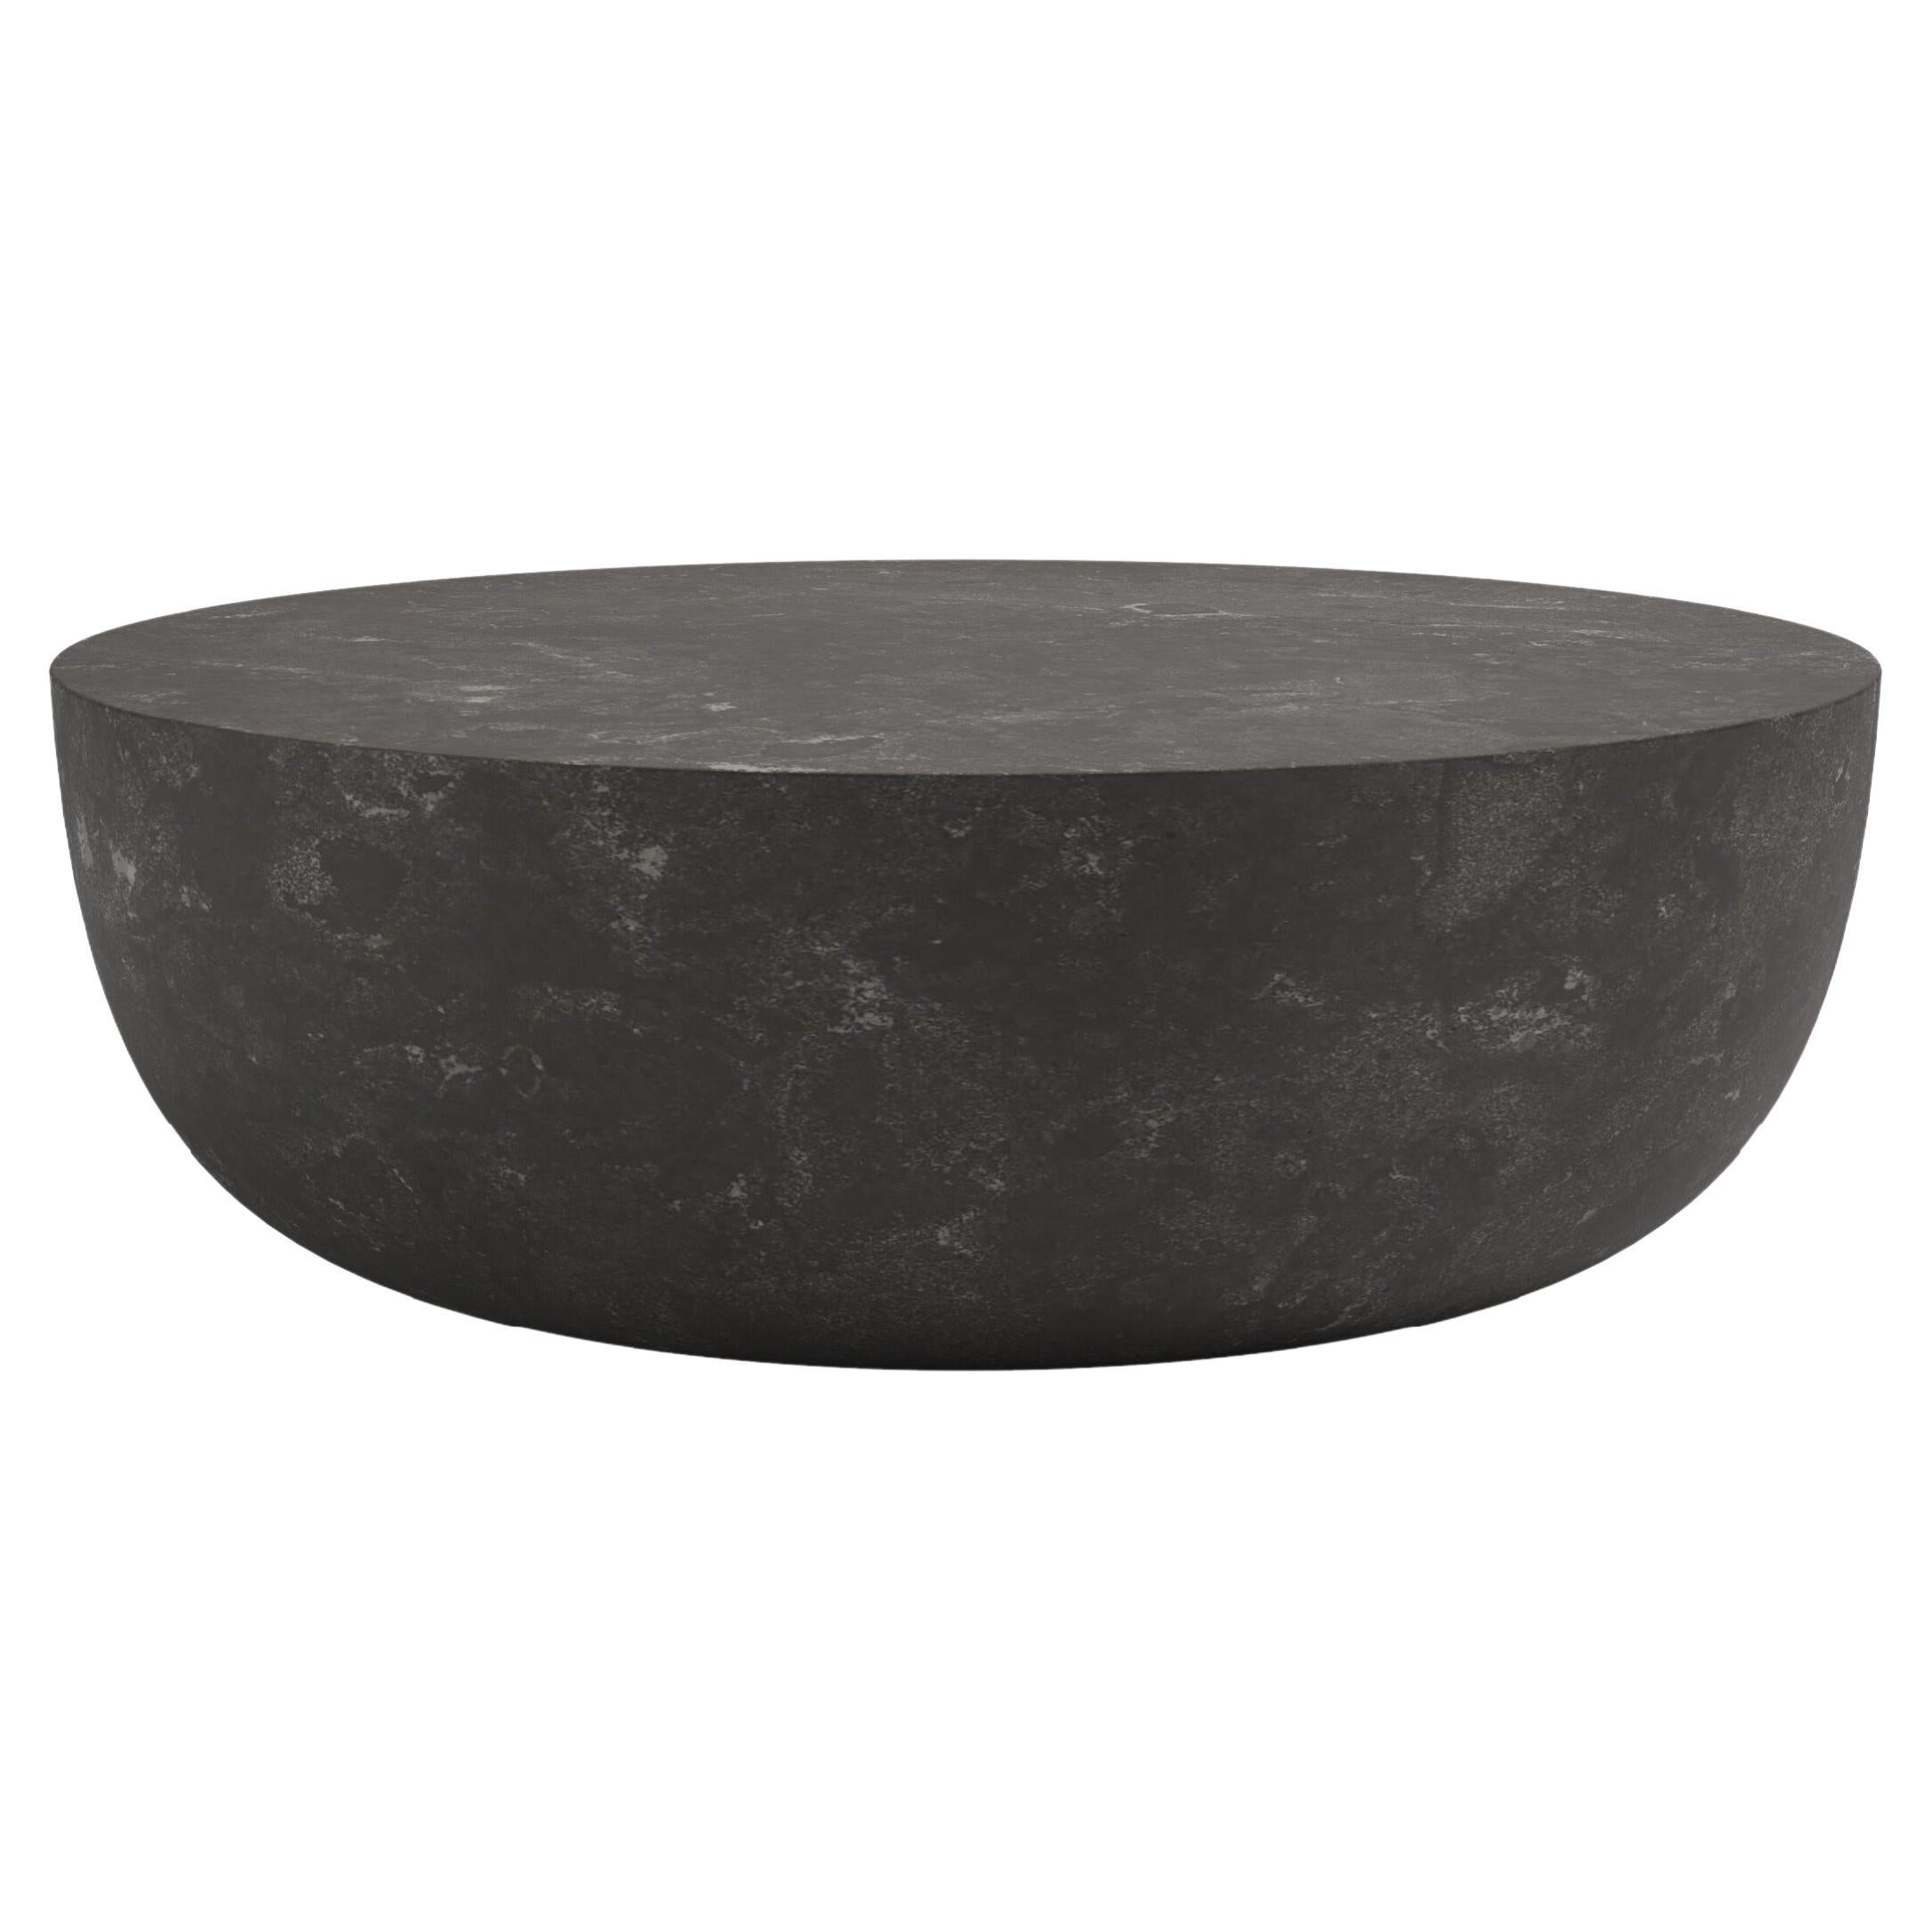 FORM(LA) Sfera Round Coffee Table 48”L x 48”W x 16”H Nero Petite Granite For Sale